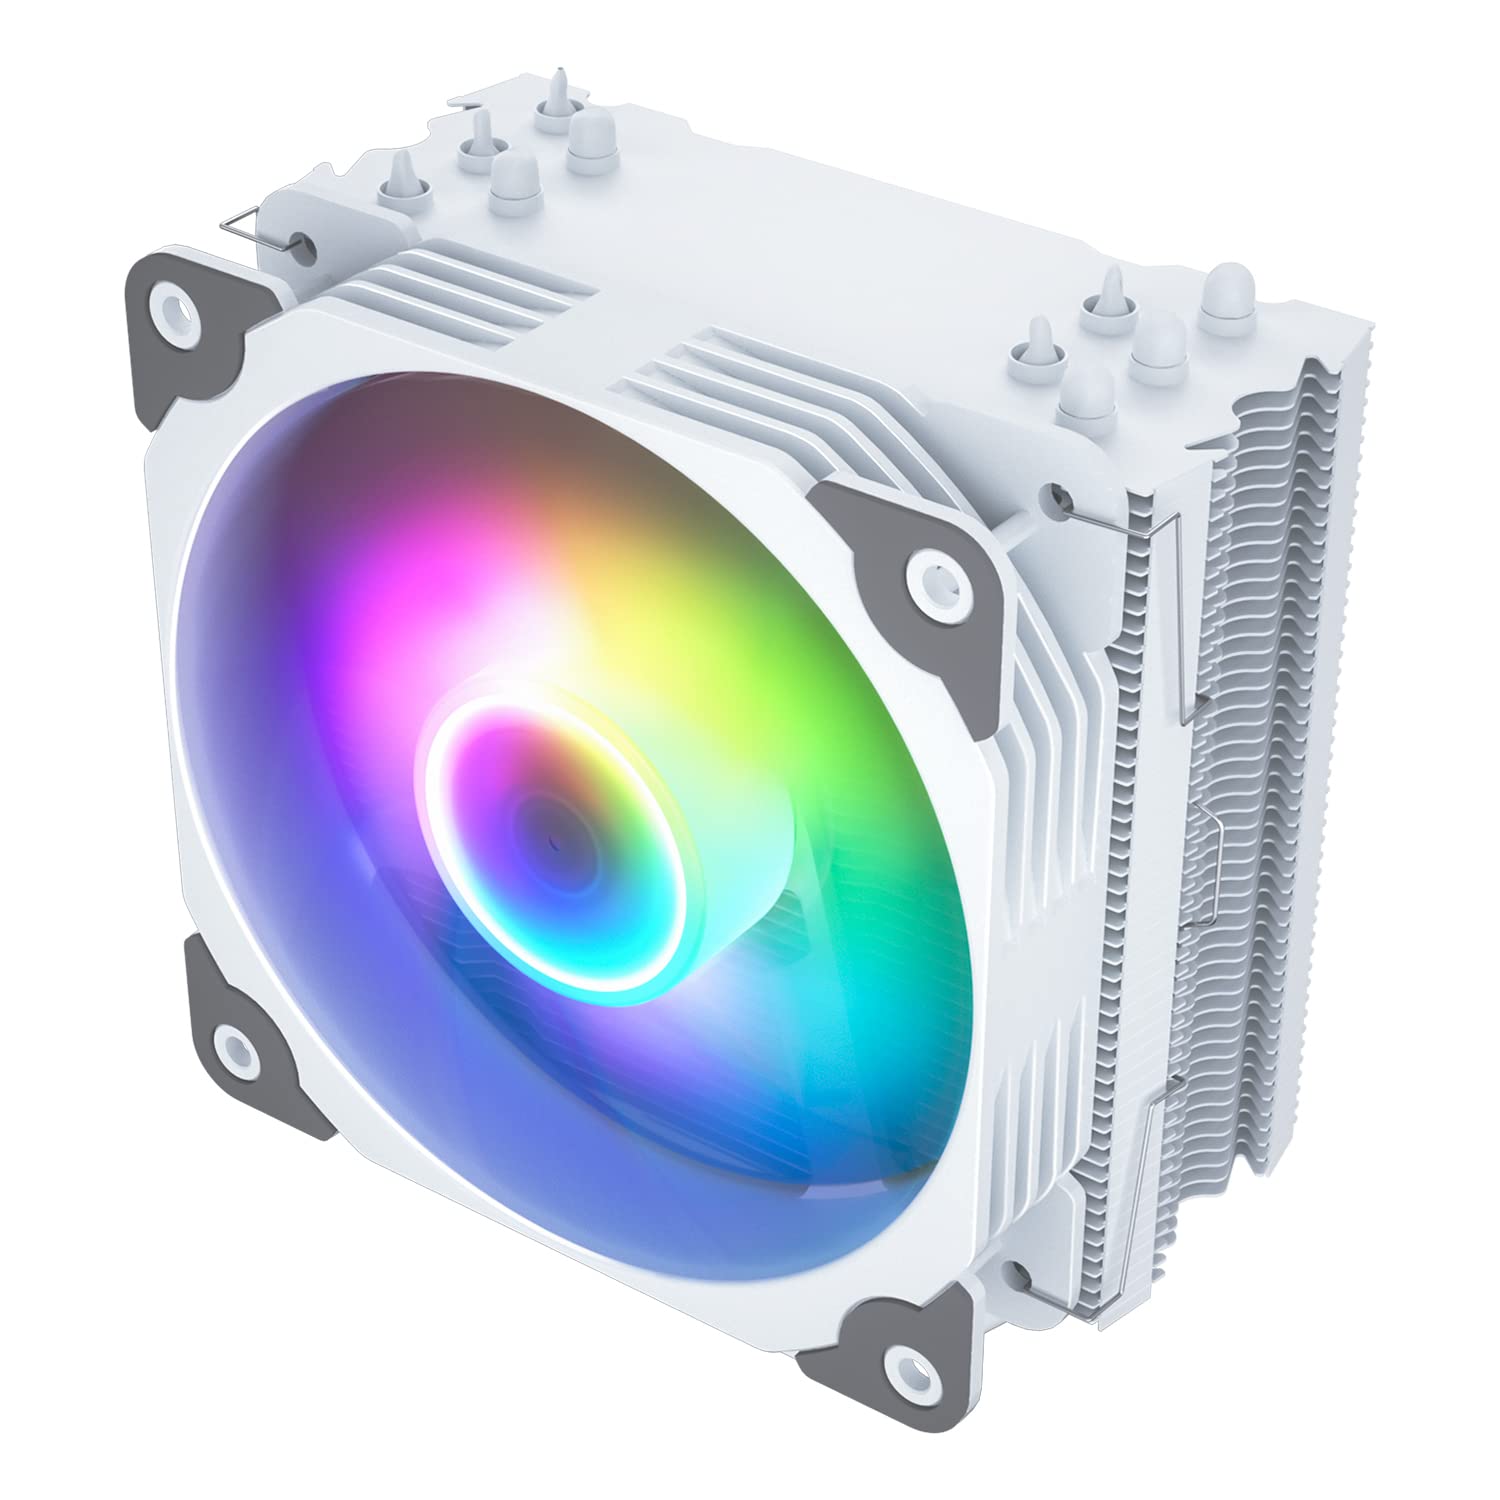 Vetroo V5 White CPU Air Cooler